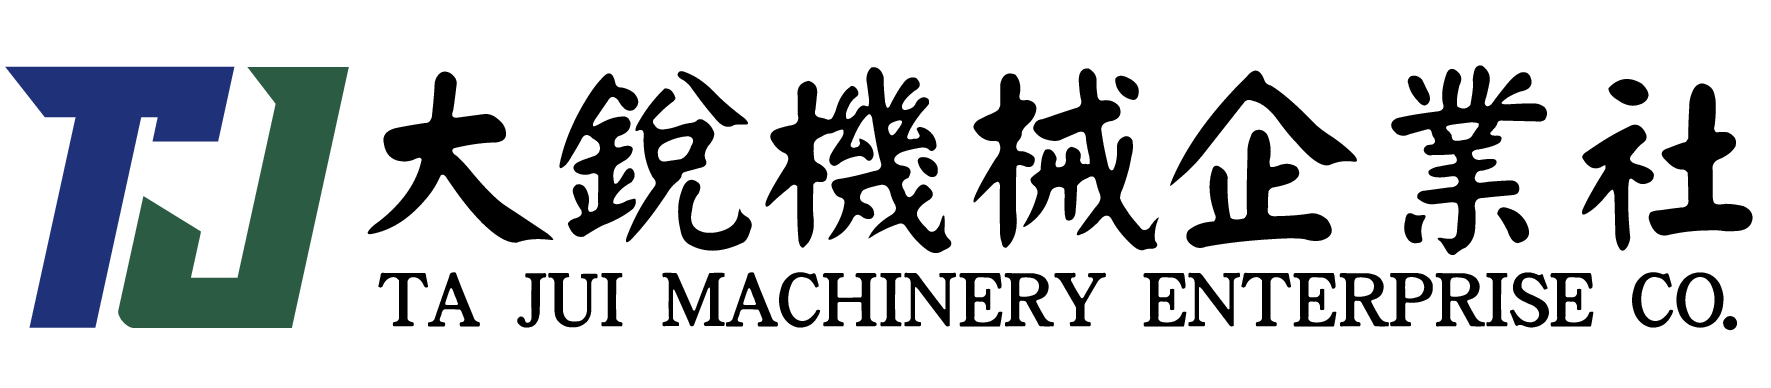 大銳機械企業社 TA JUI MACHINERY ENTERPRISE CO.